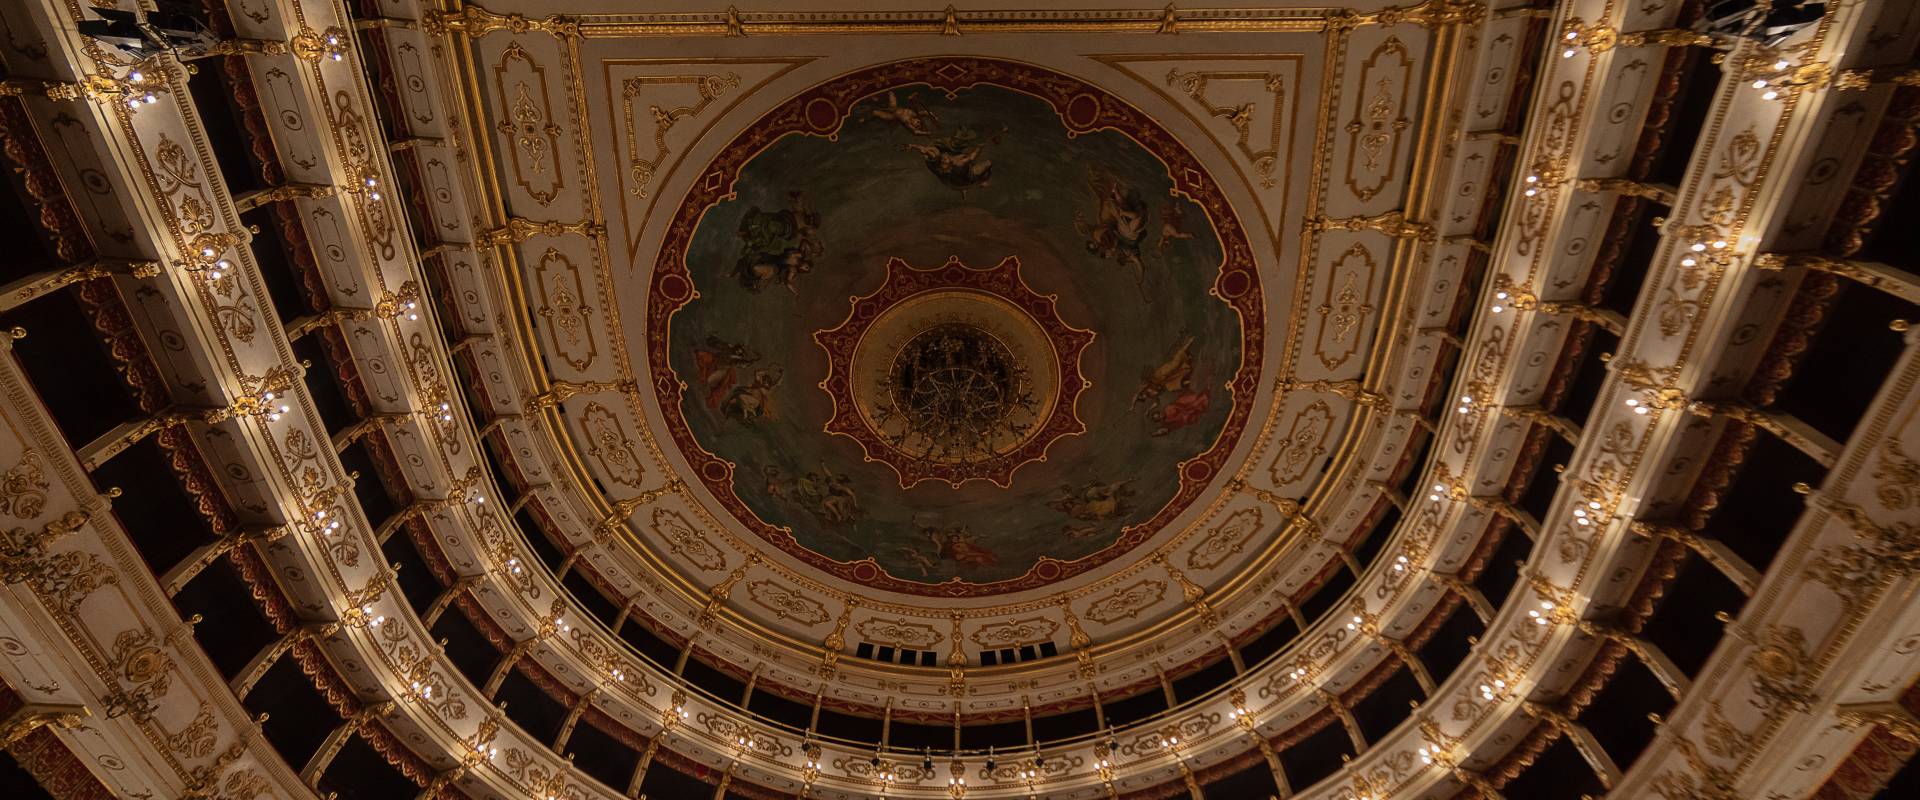 Teatro Regio parte superiore photo by Maurizio Moro515